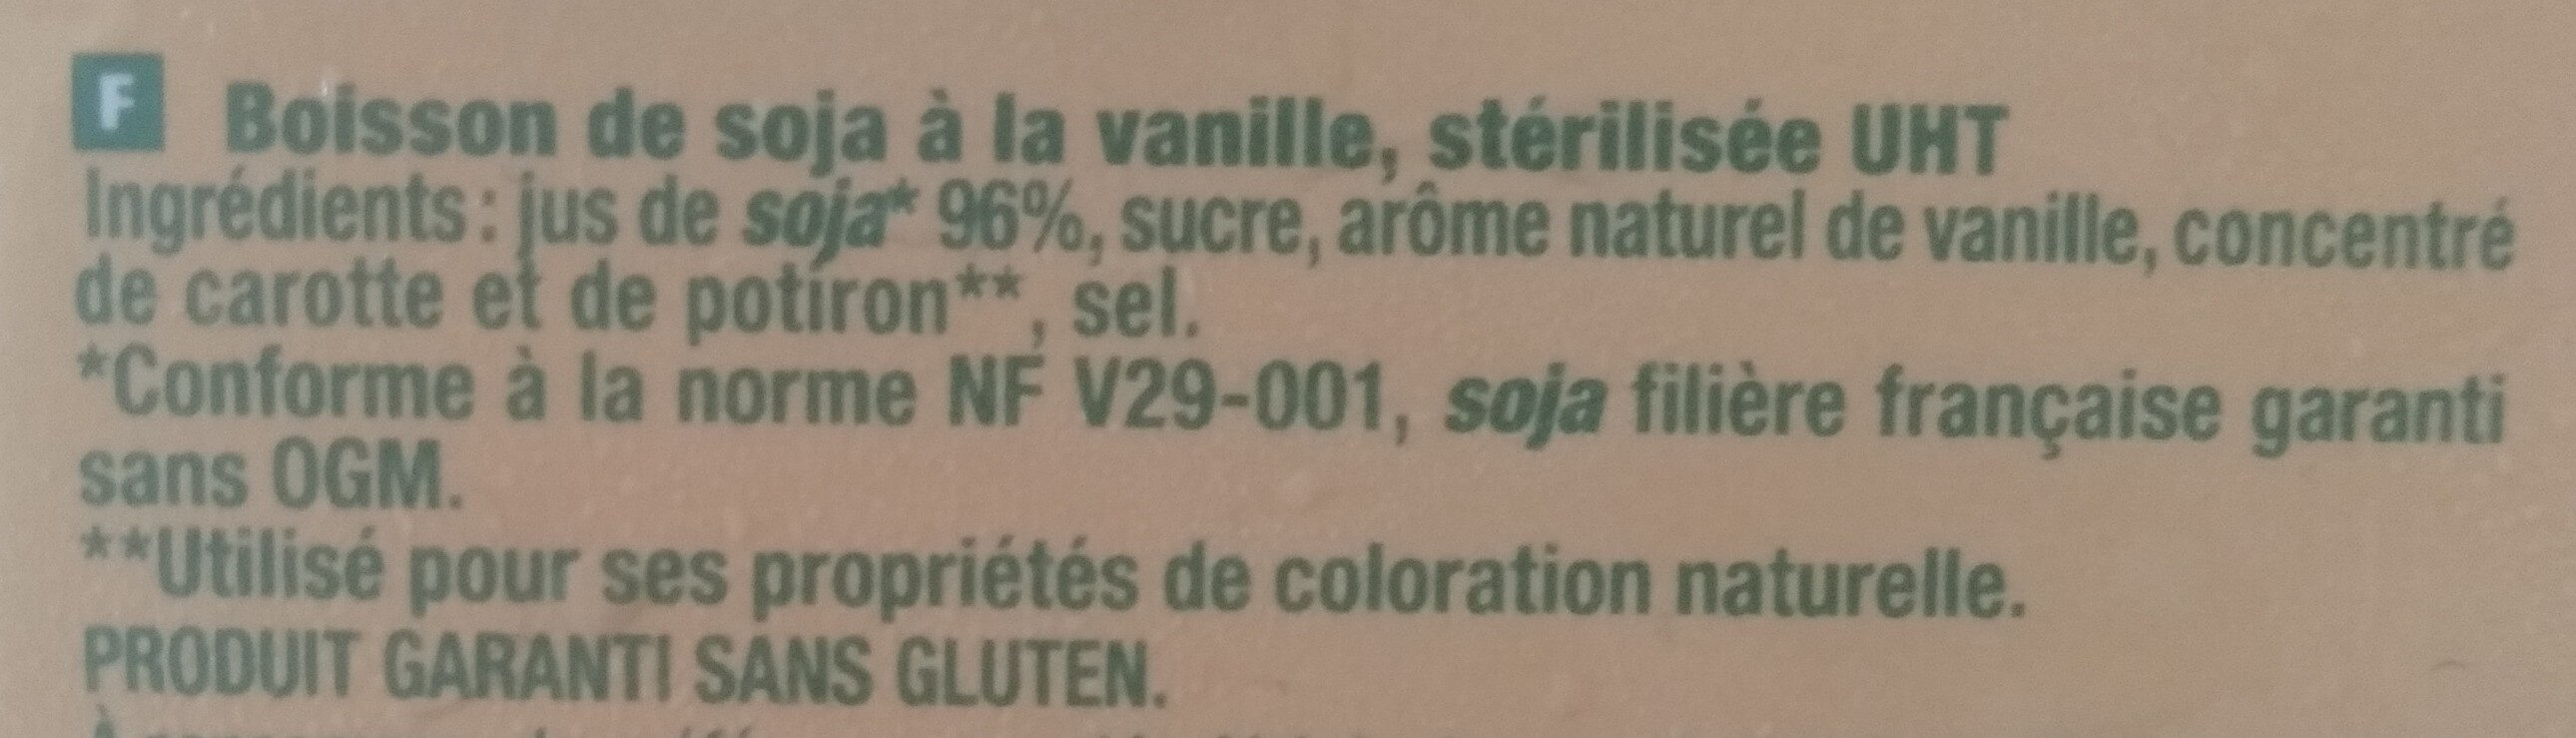 Boisson de Soja à la vanille, stérilisée UHT - Ingrédients